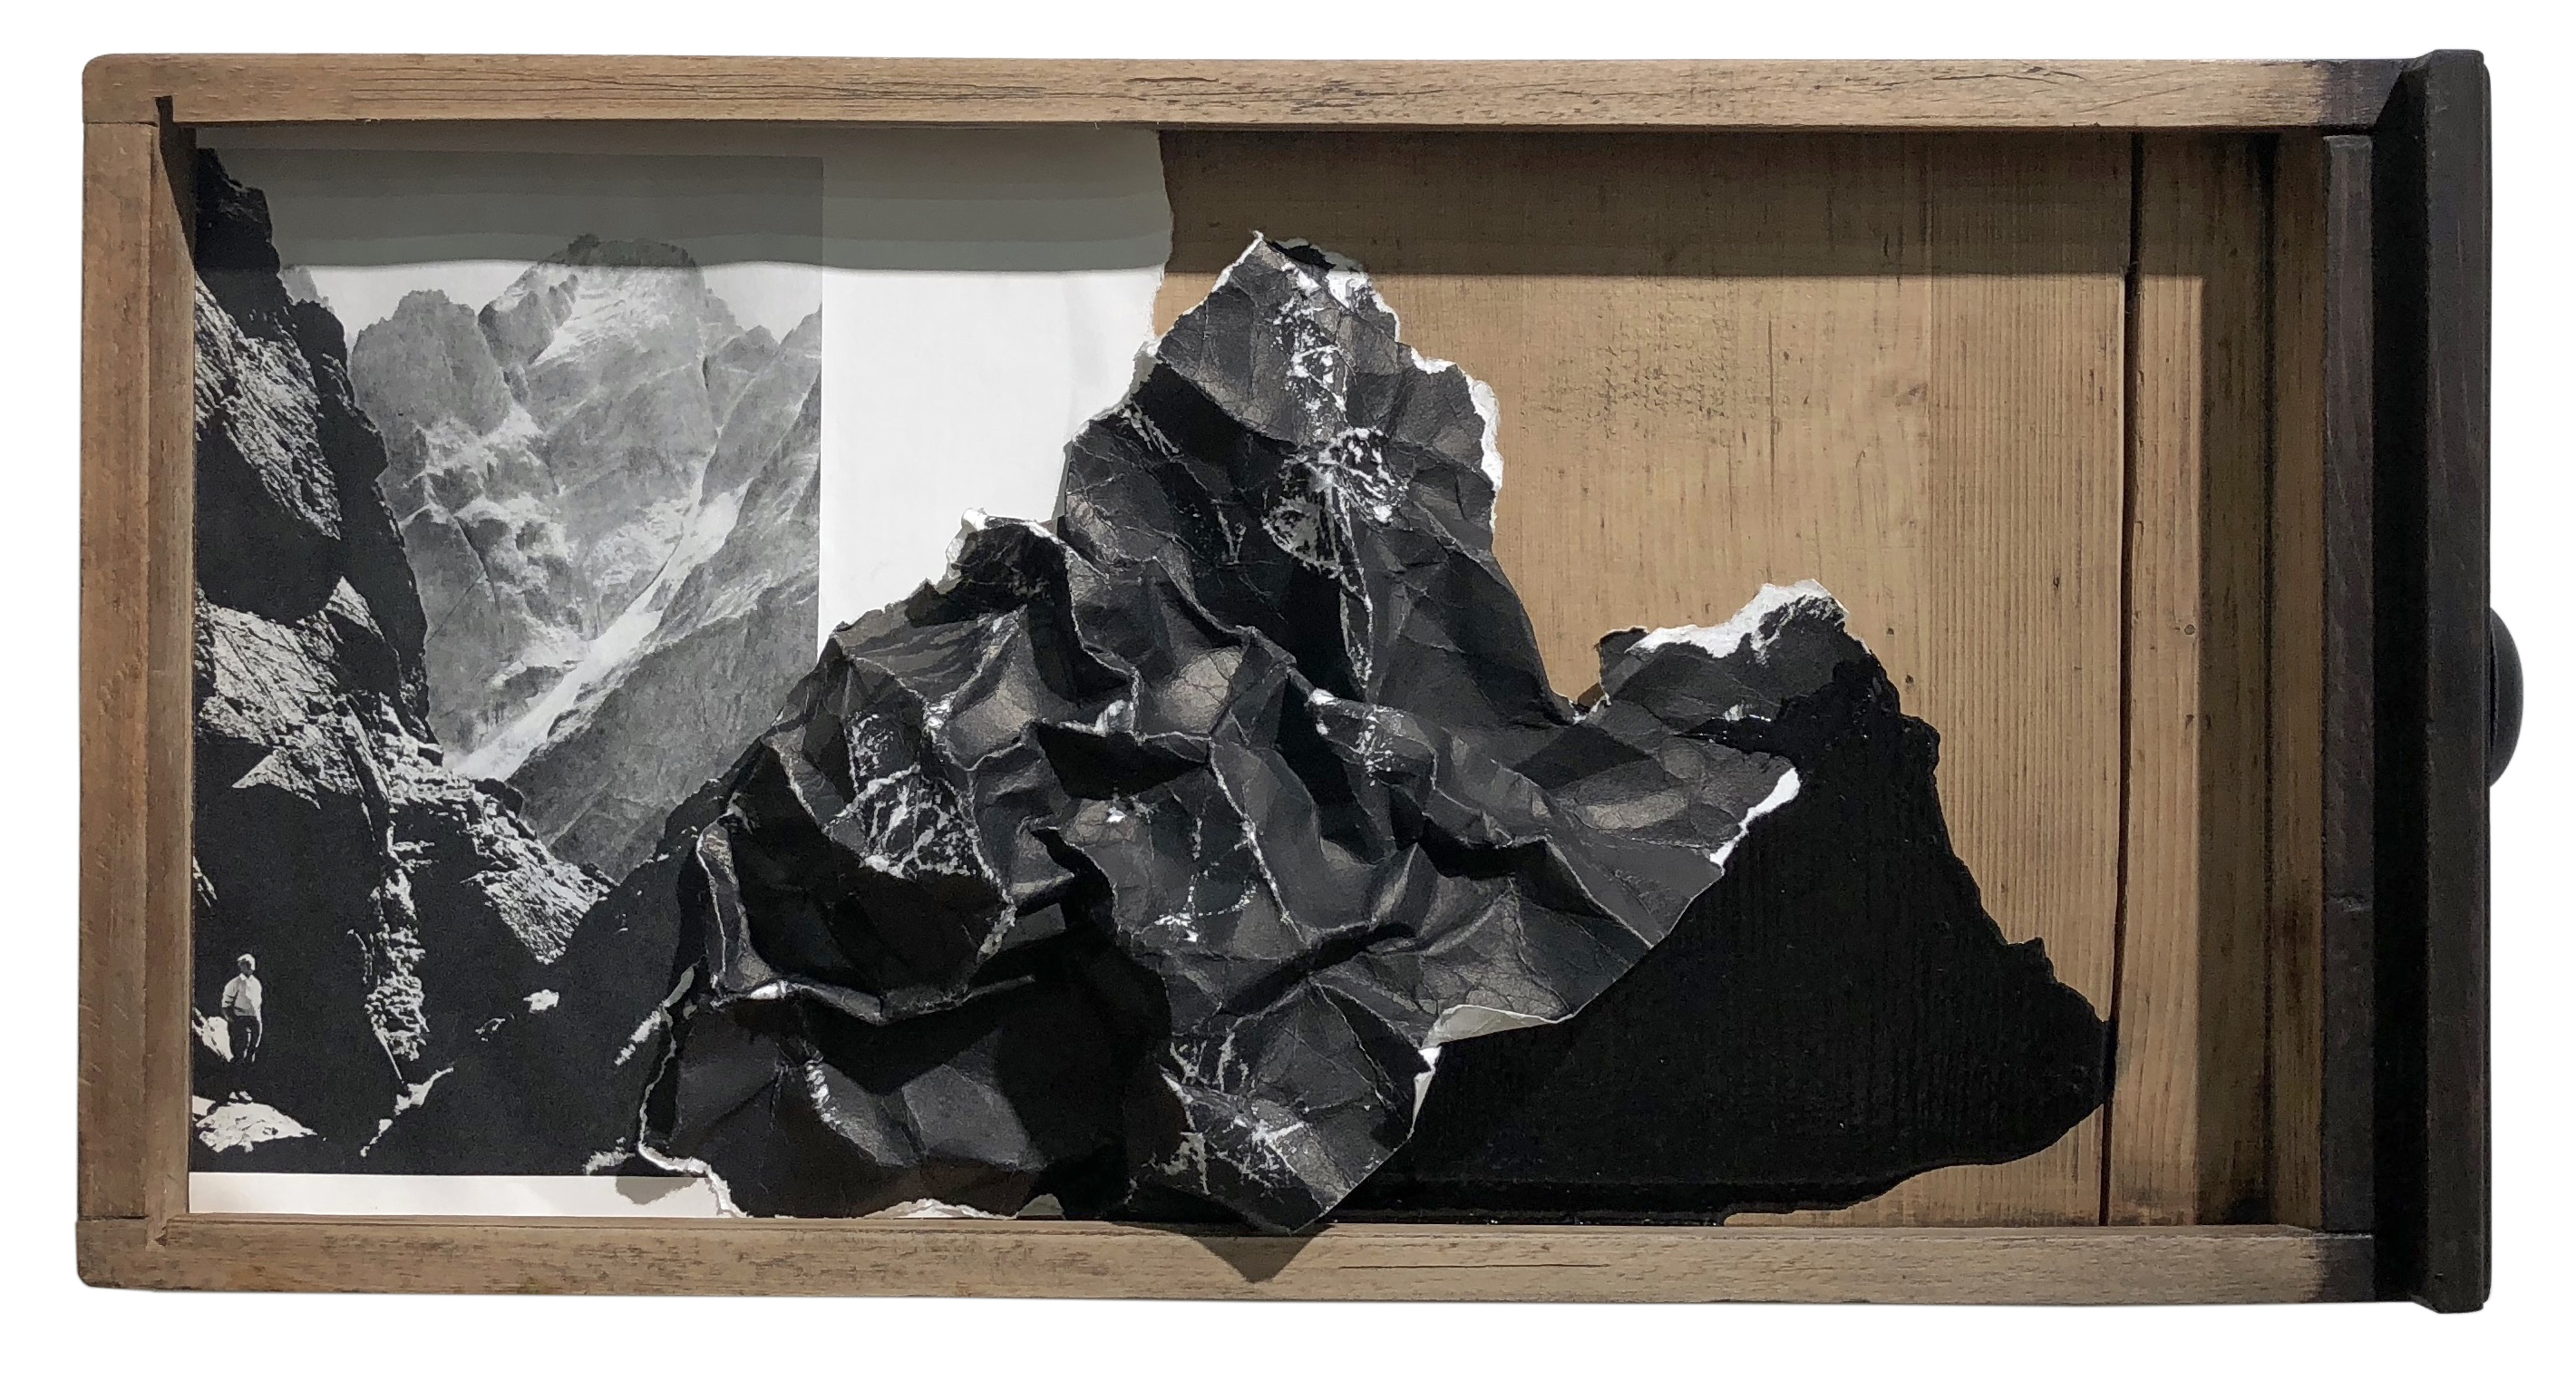 03 Lucia Tallova, from series Mountain, 27 x 53 x 06 cm, 2018